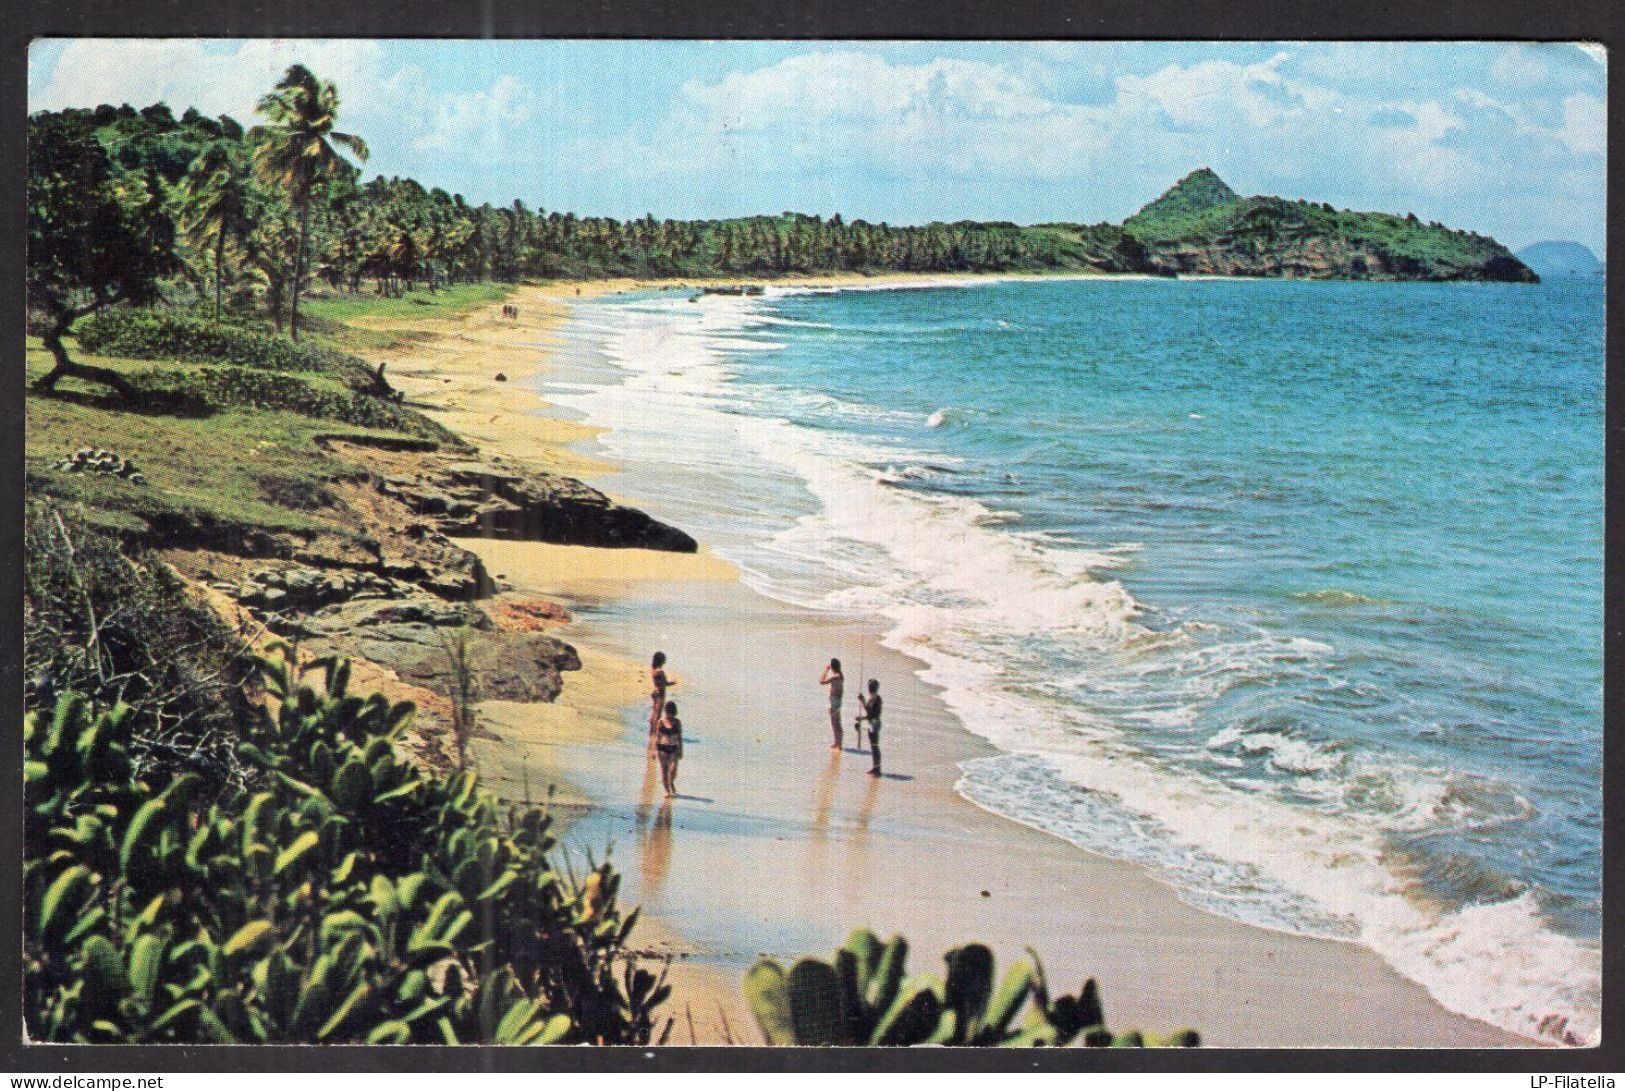 Grenada - 1975 - Lavera Beach - Grenada